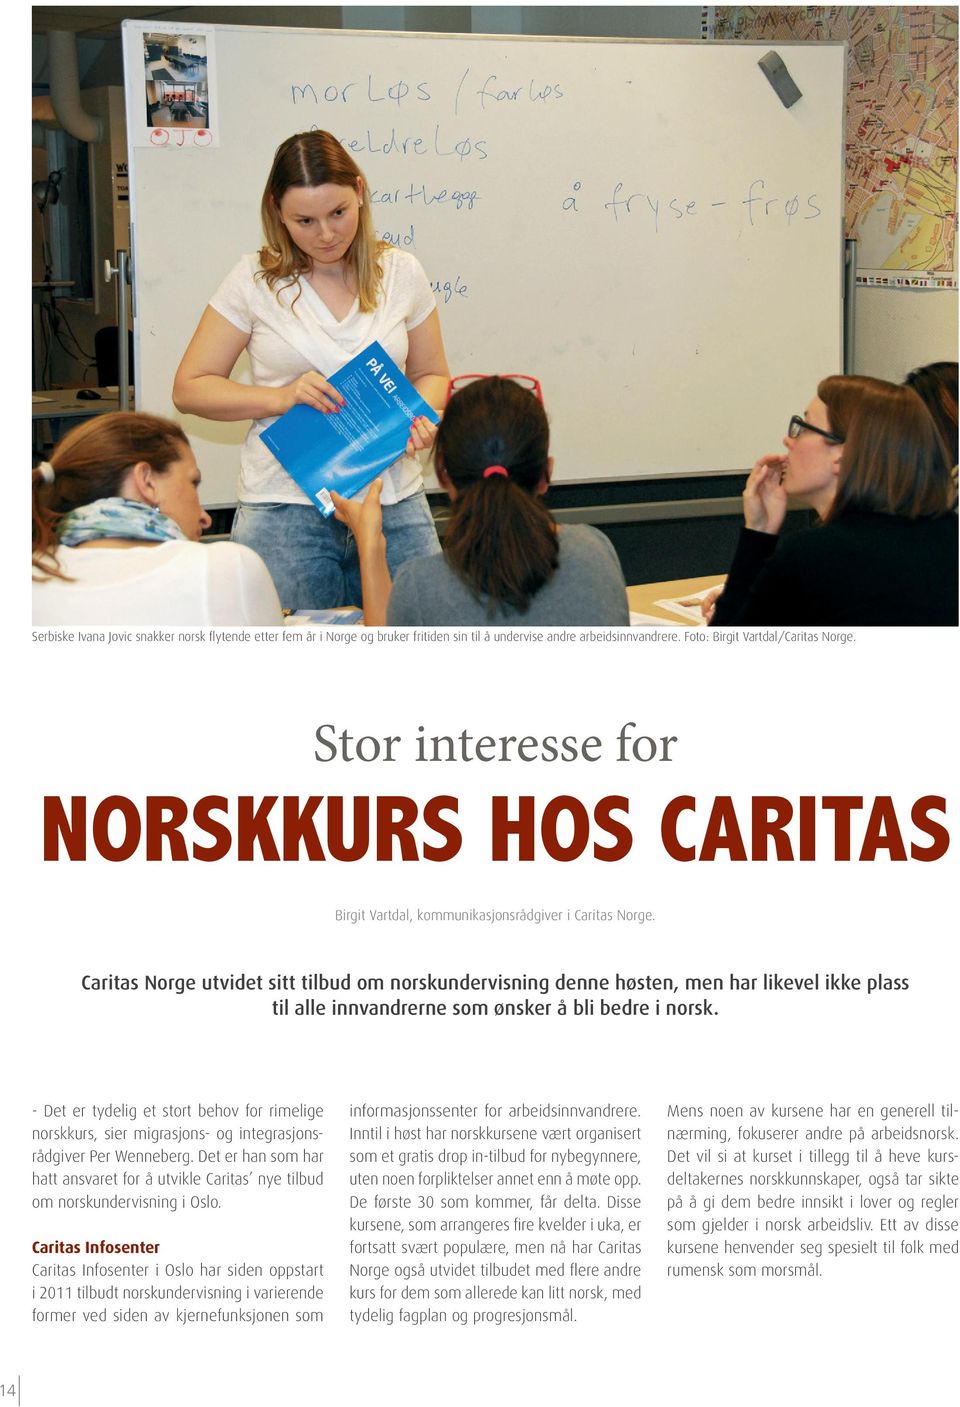 Caritas Norge utvidet sitt tilbud om norskundervisning denne høsten, men har likevel ikke plass til alle innvandrerne som ønsker å bli bedre i norsk.